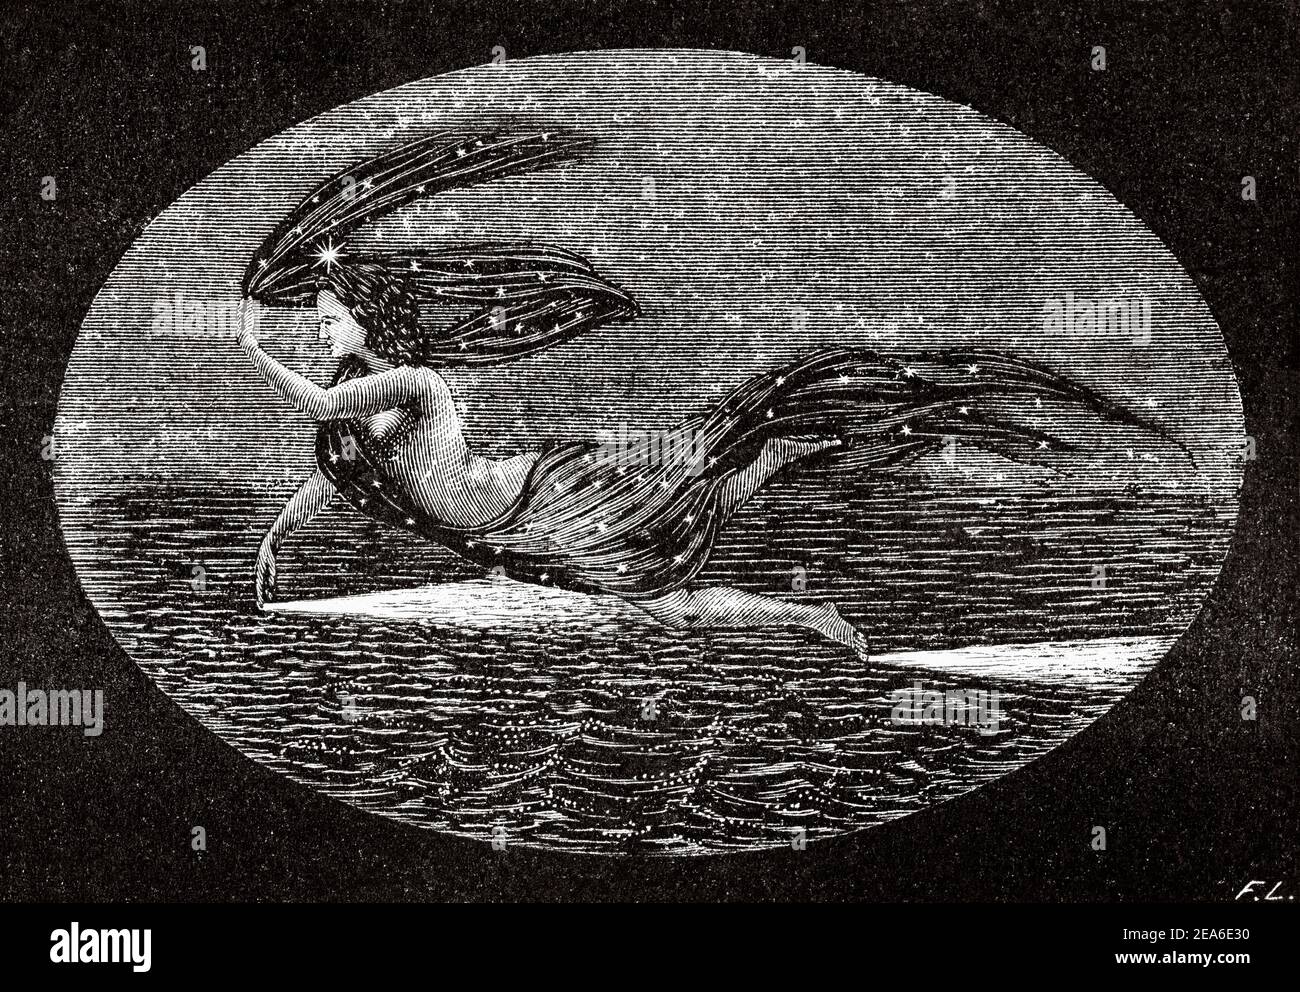 Sirena de Mar profundo. Antiguo siglo 19 grabado ilustración de el Mundo ilustrado 1879 Foto de stock